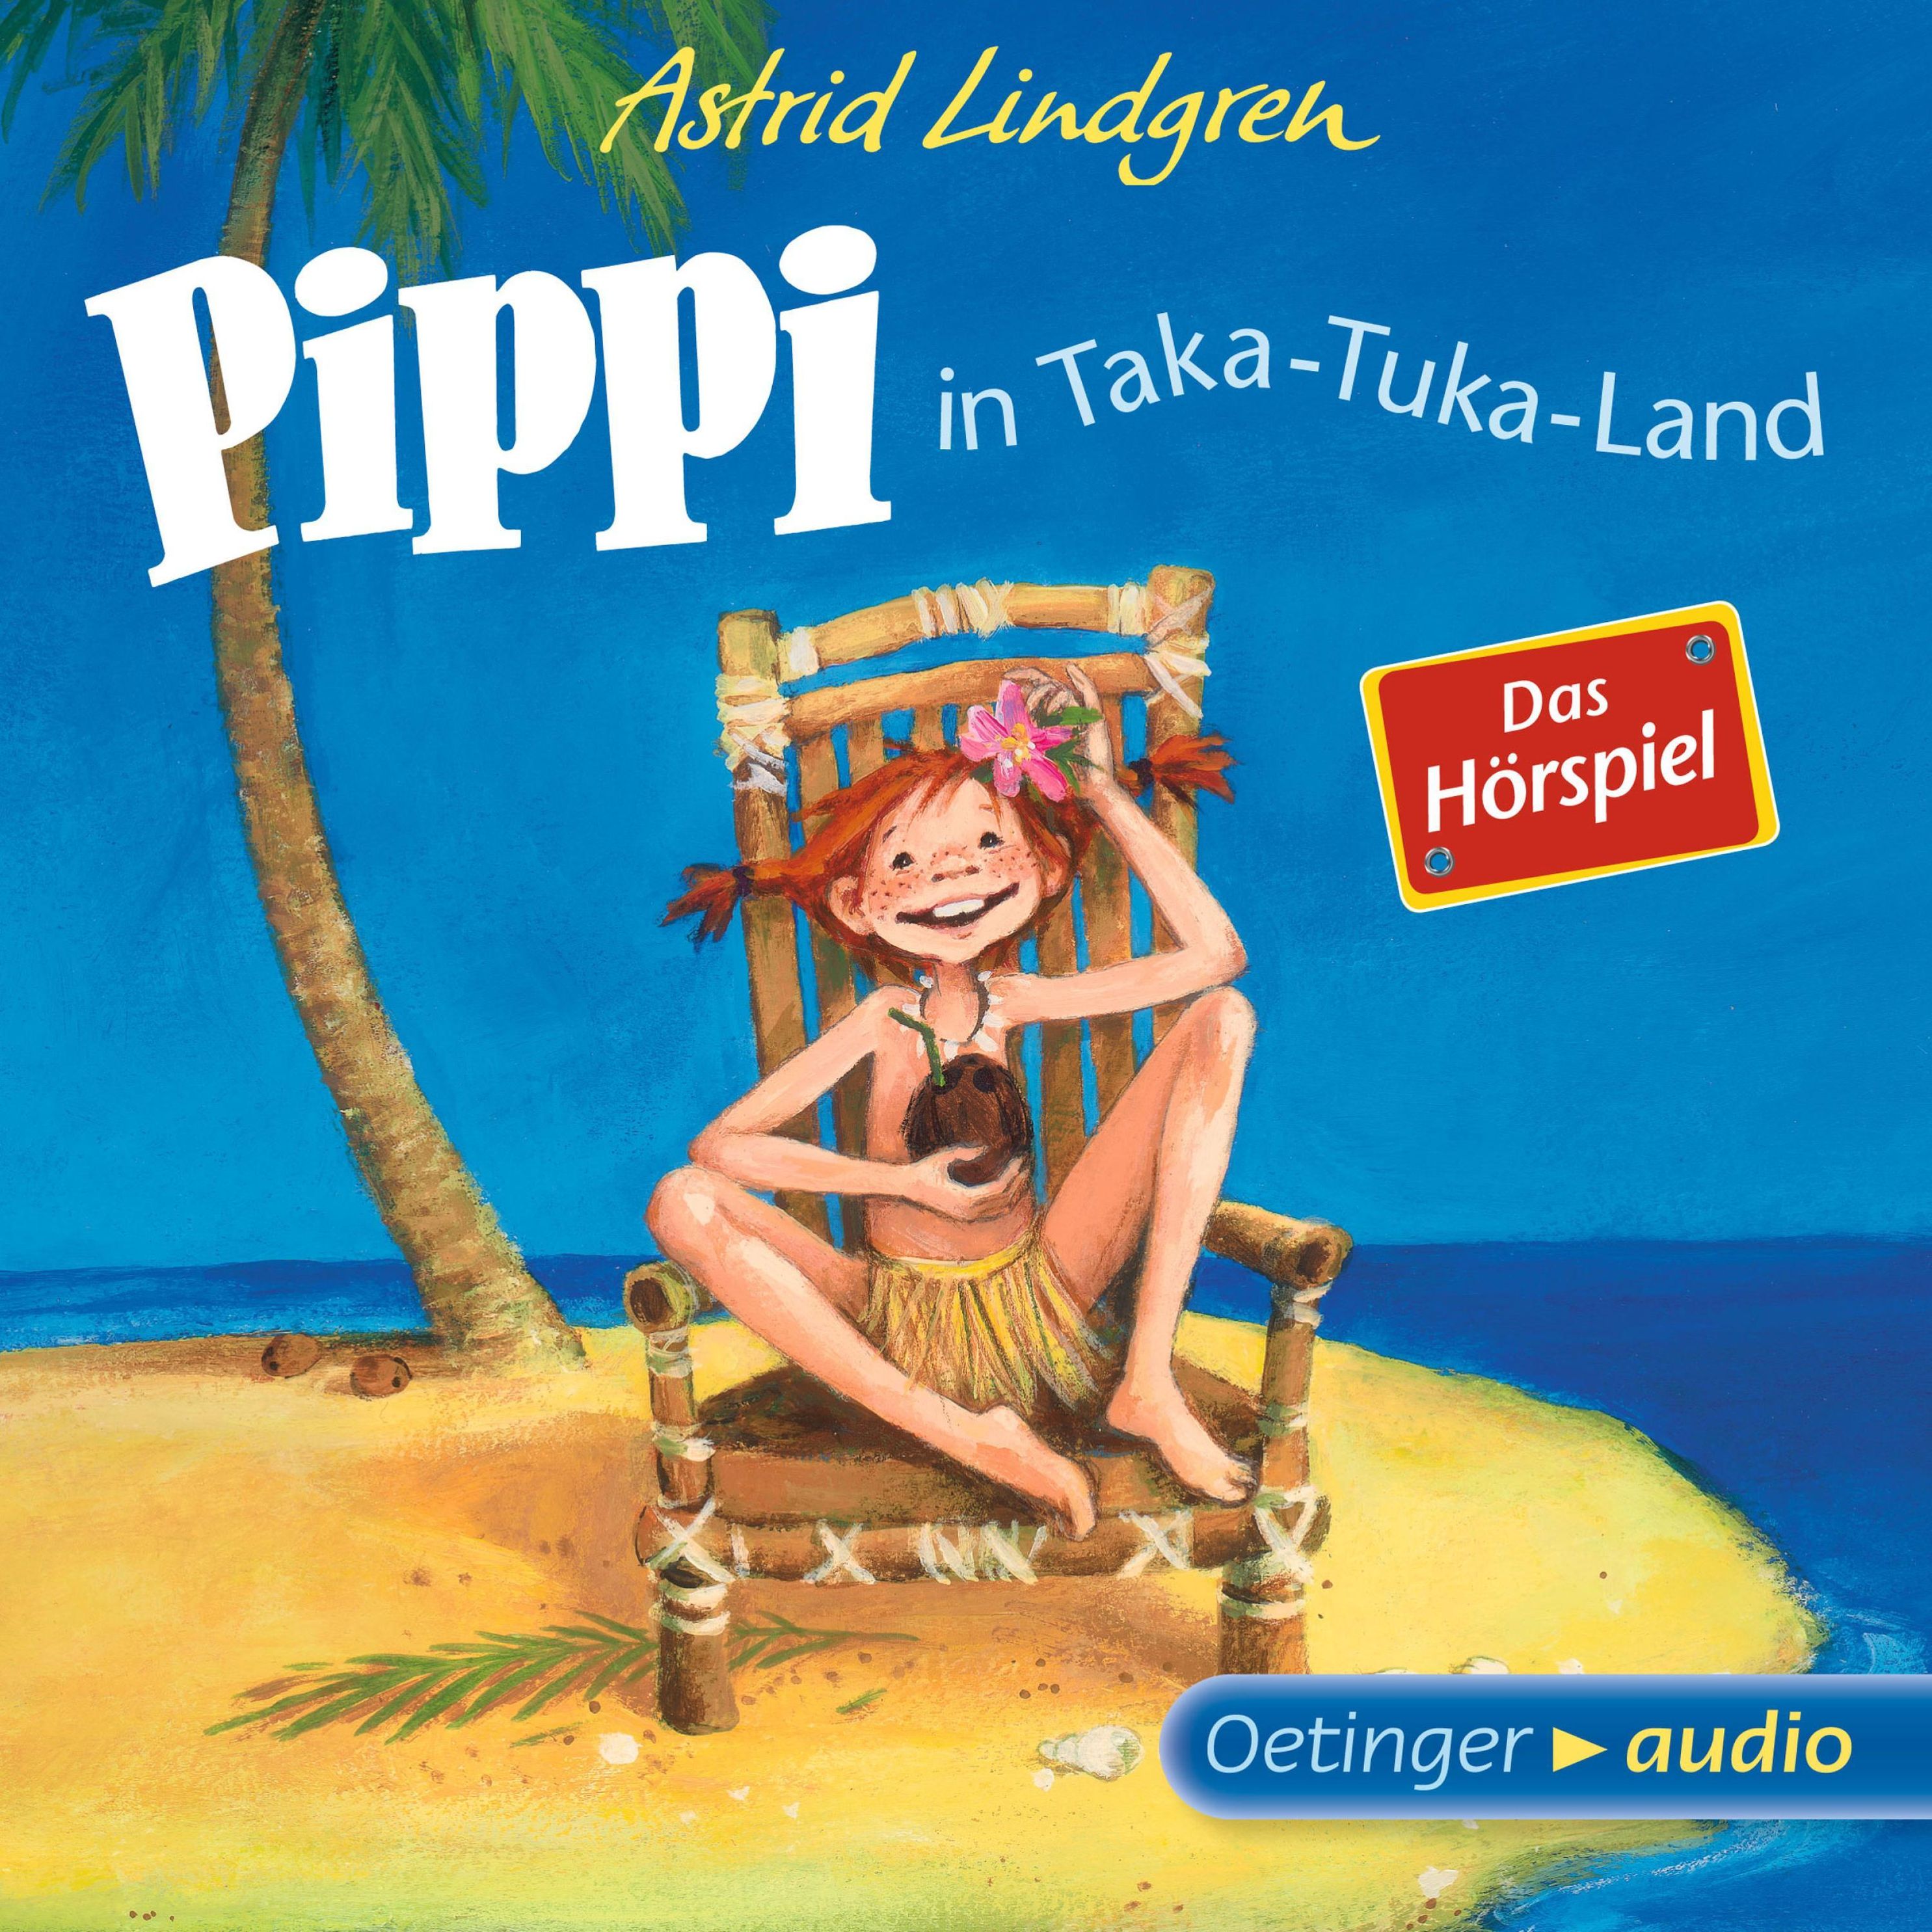 Pippi Langstrumpf - 3 - Pippi in Taka-Tuka-Land - Das Hörspiel Hörbuch  Download